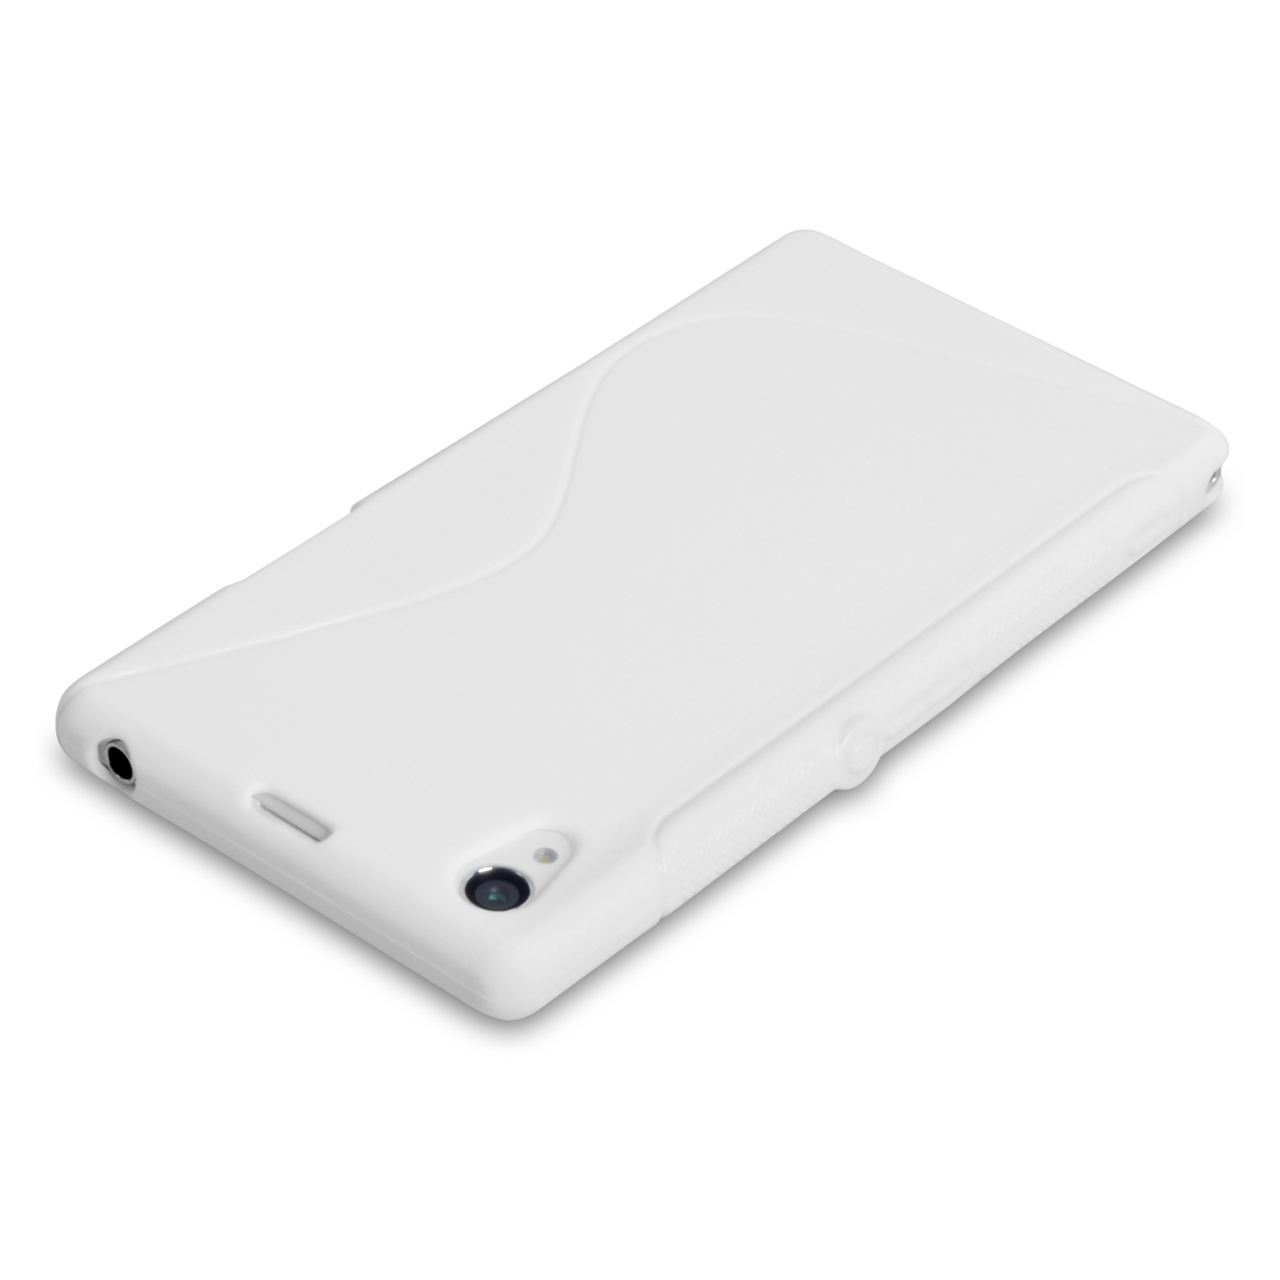 Caseflex Sony Xperia Z1 S-Line Gel Case - White